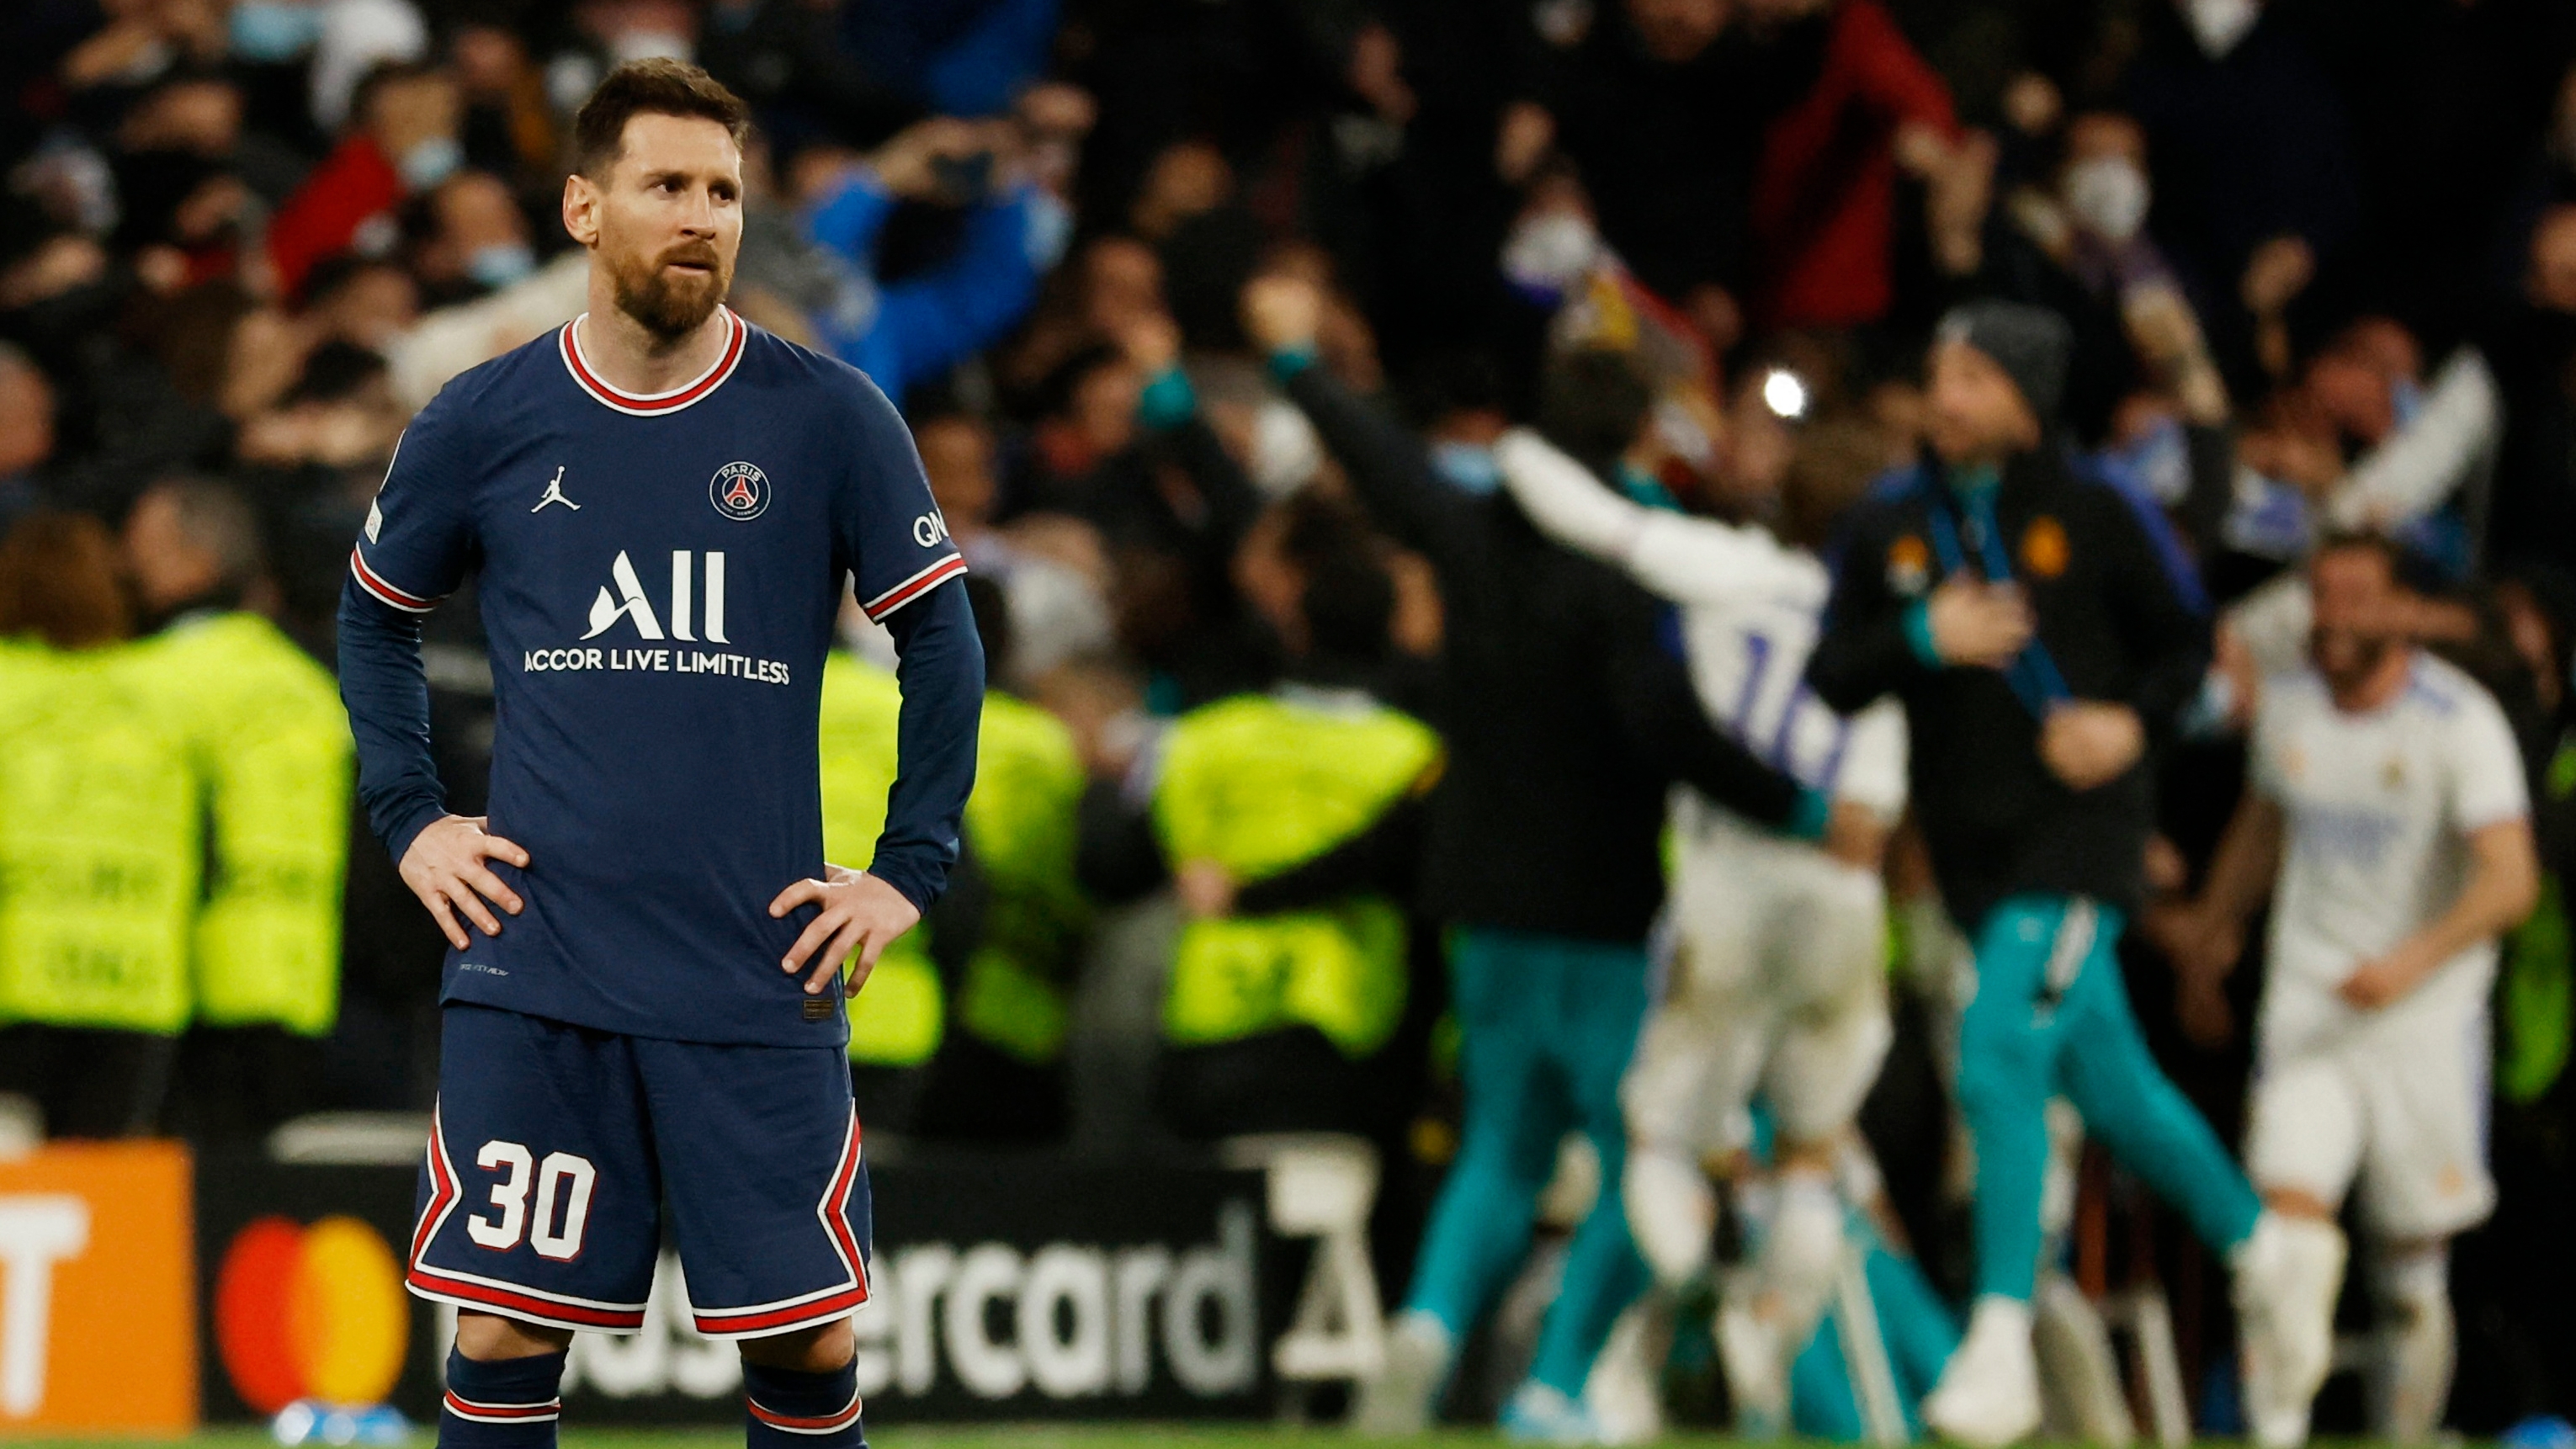 La delusione di Messi e PSG dopo l'eliminazione dalla Champions League (REUTERS/Juan Medina)